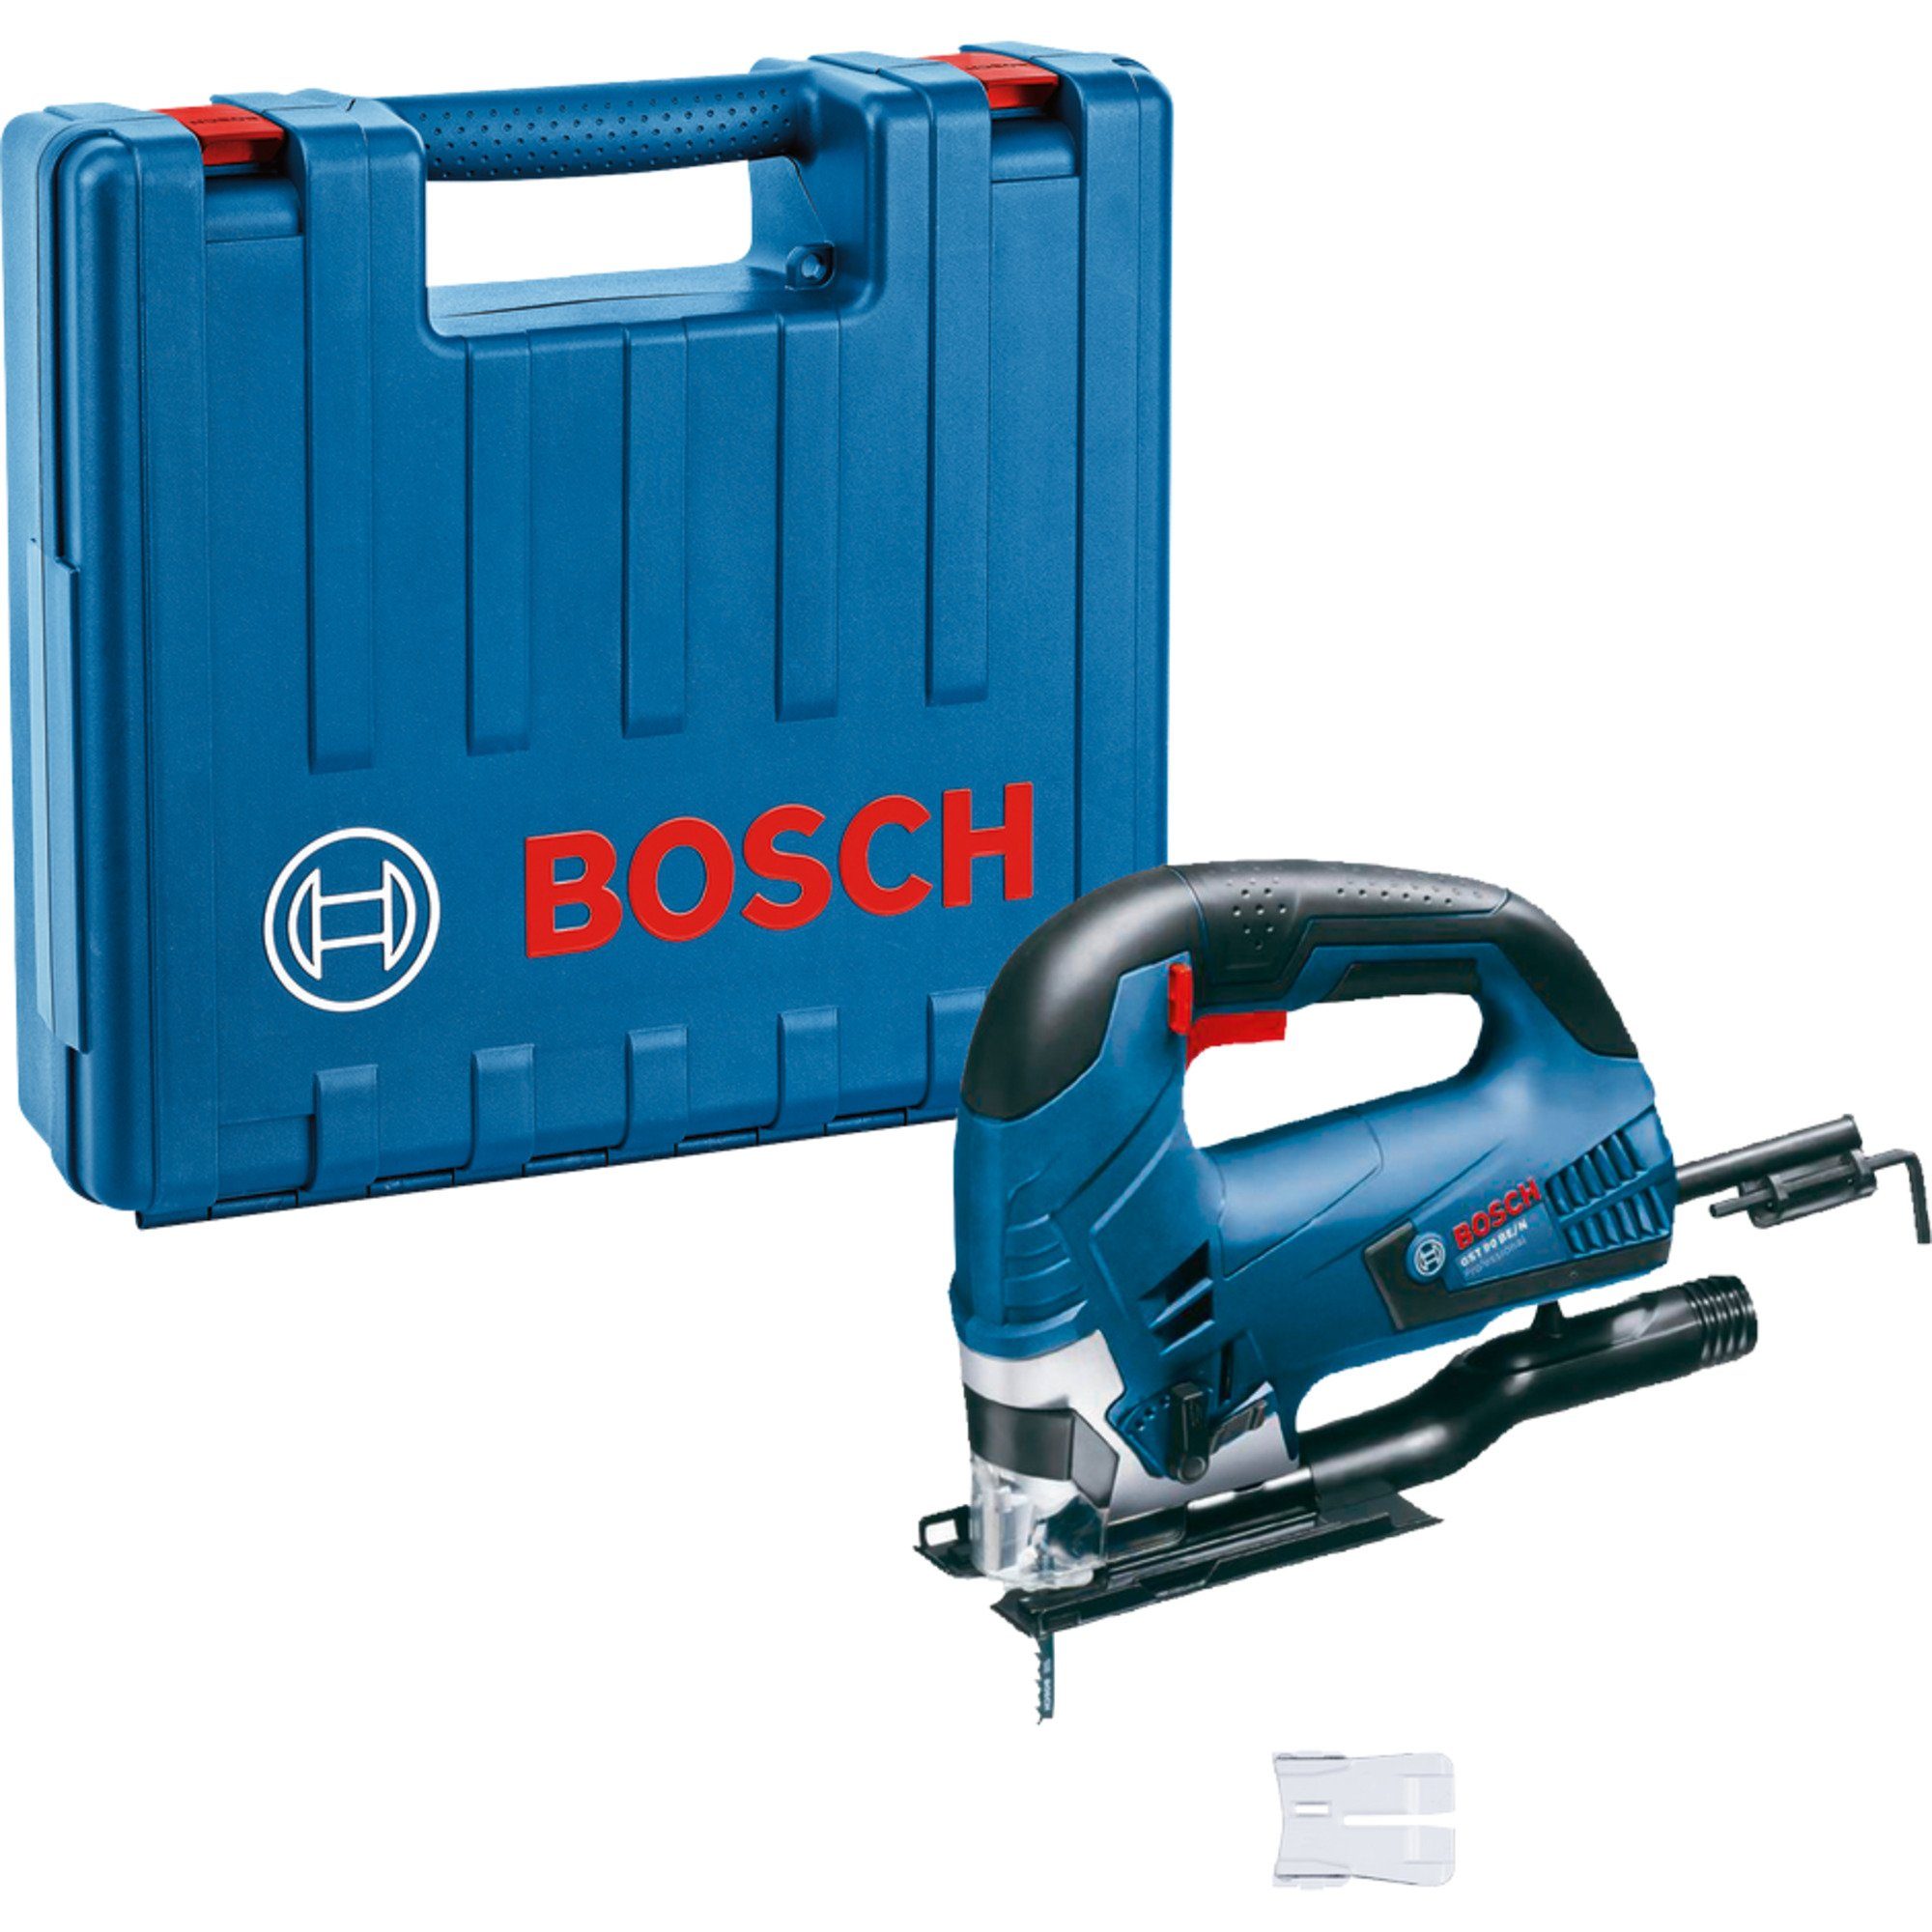 BOSCH Stichsäge Bosch Professional Stichsäge GST 90 BE